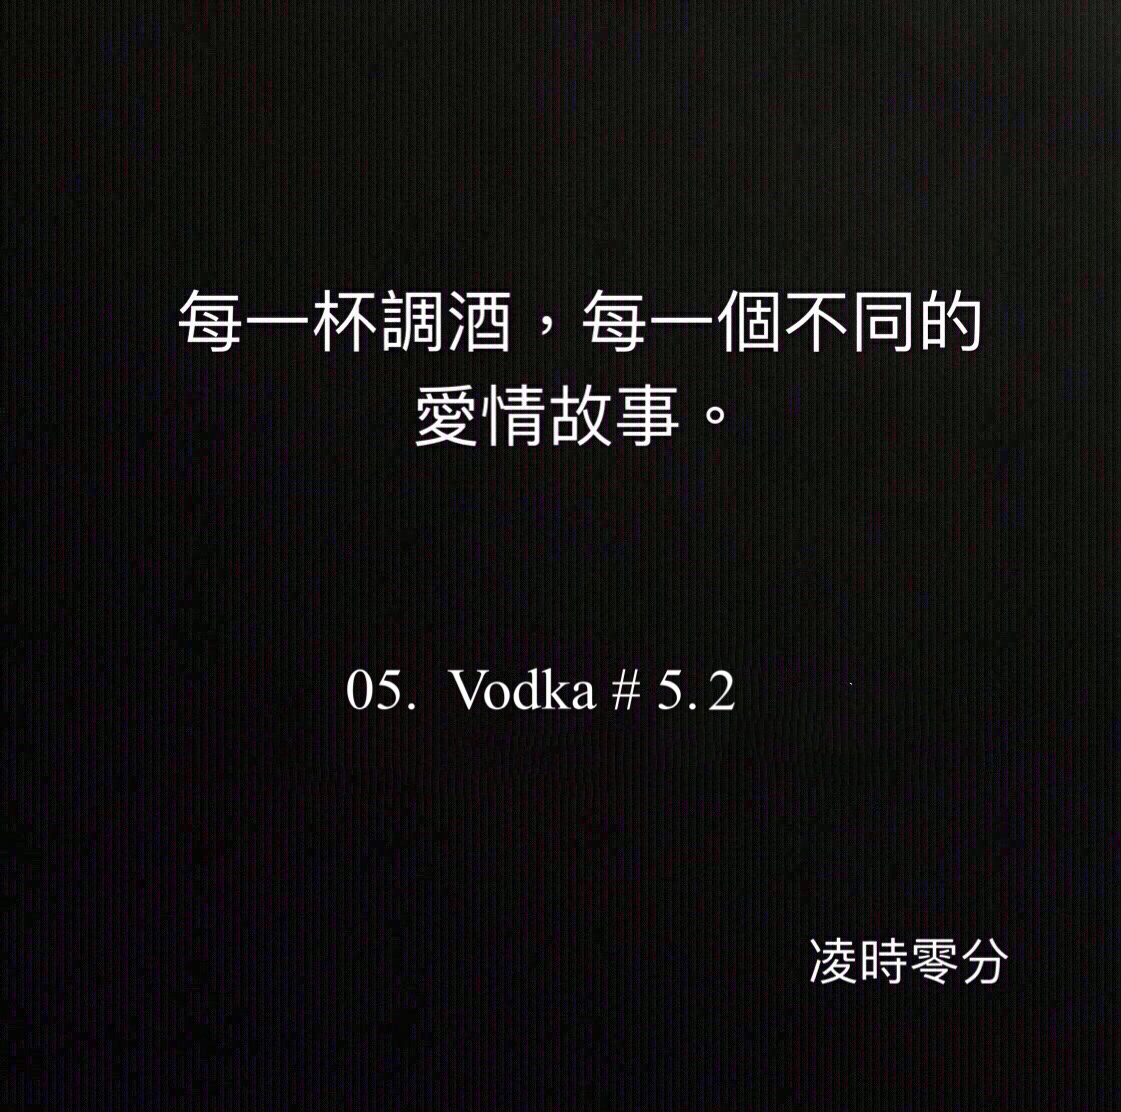 （短篇故事）每一杯調酒，每一個不同的愛情故事 05. Vodka #5.2